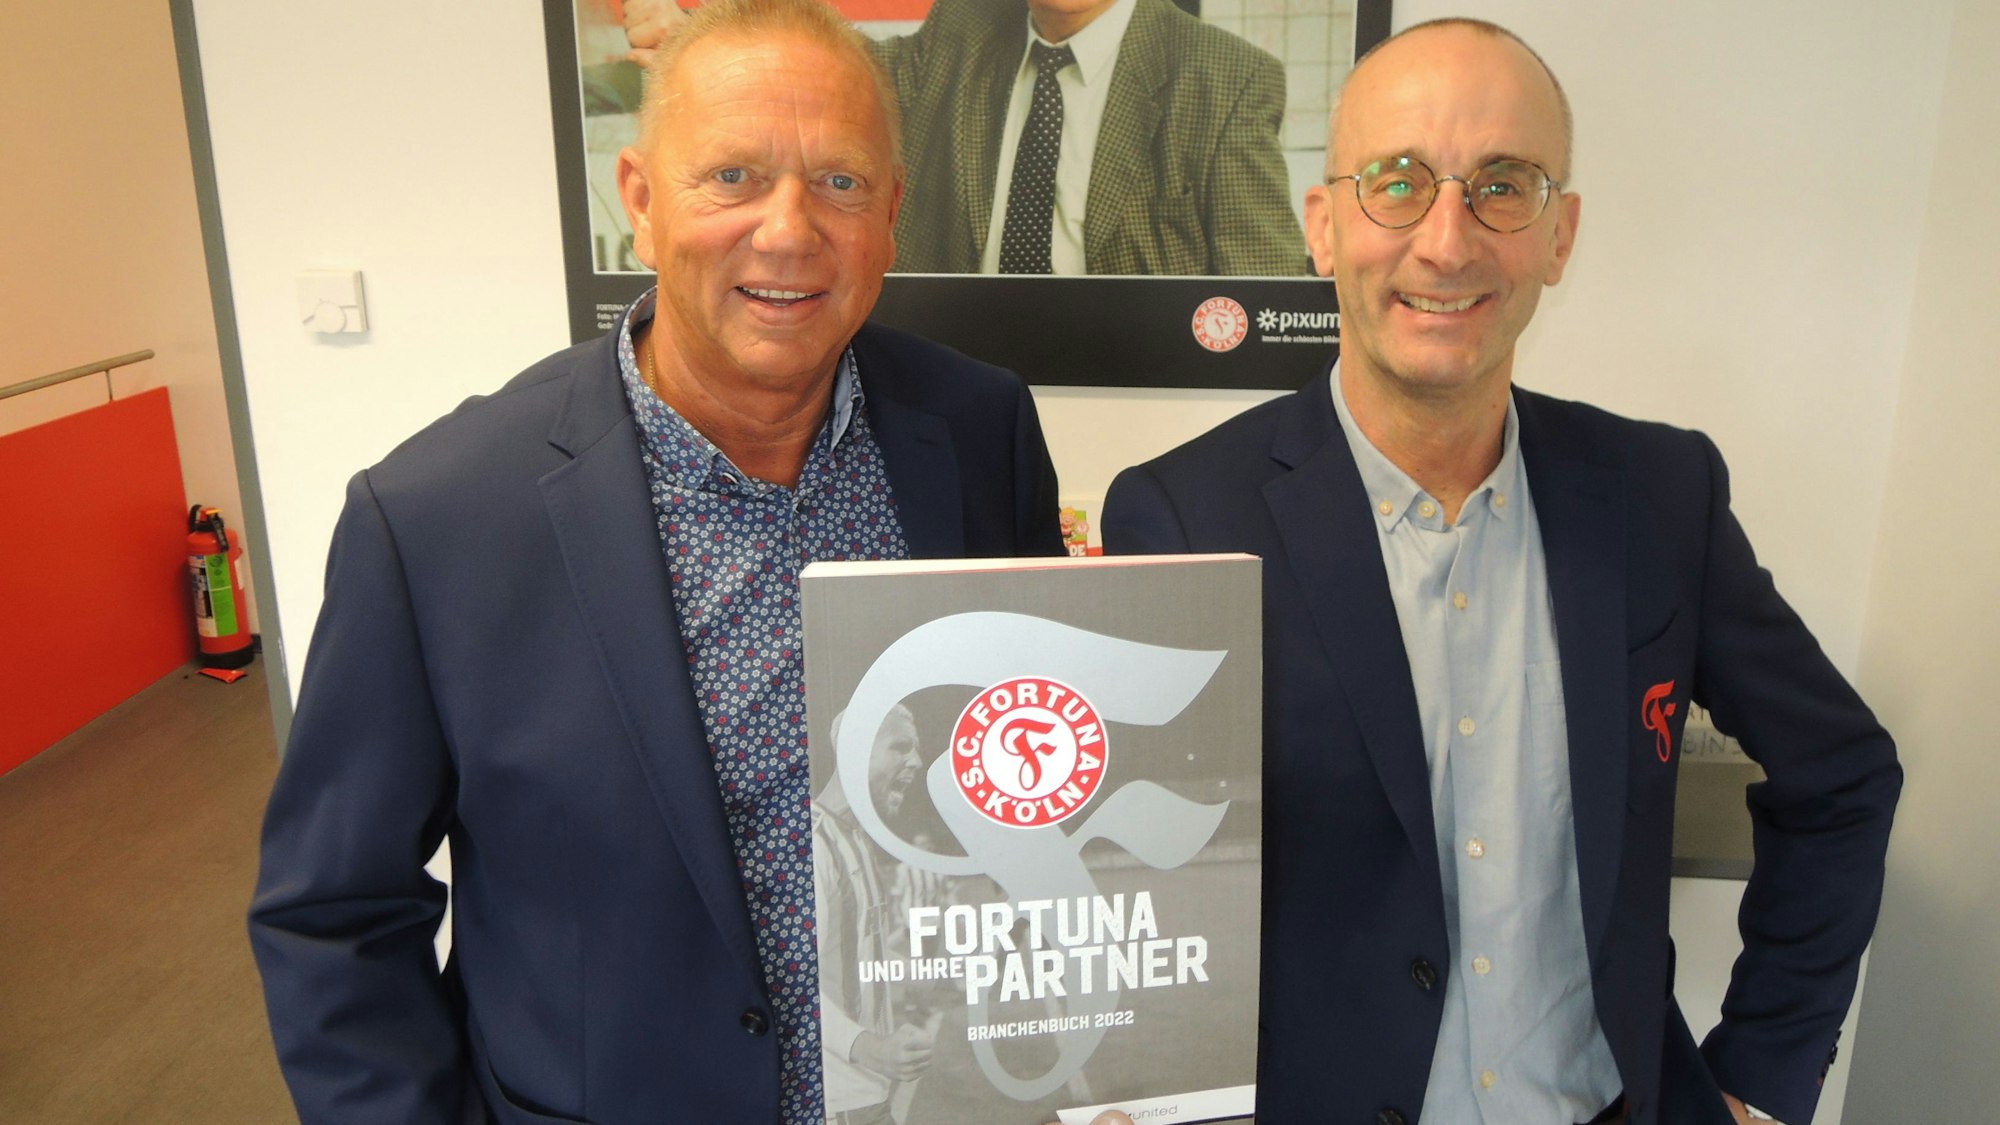 Das Foto zeigt die neuen Macher bei Fortuna Köln: Robert Pöppinghaus und Jürgen Drolshagen.